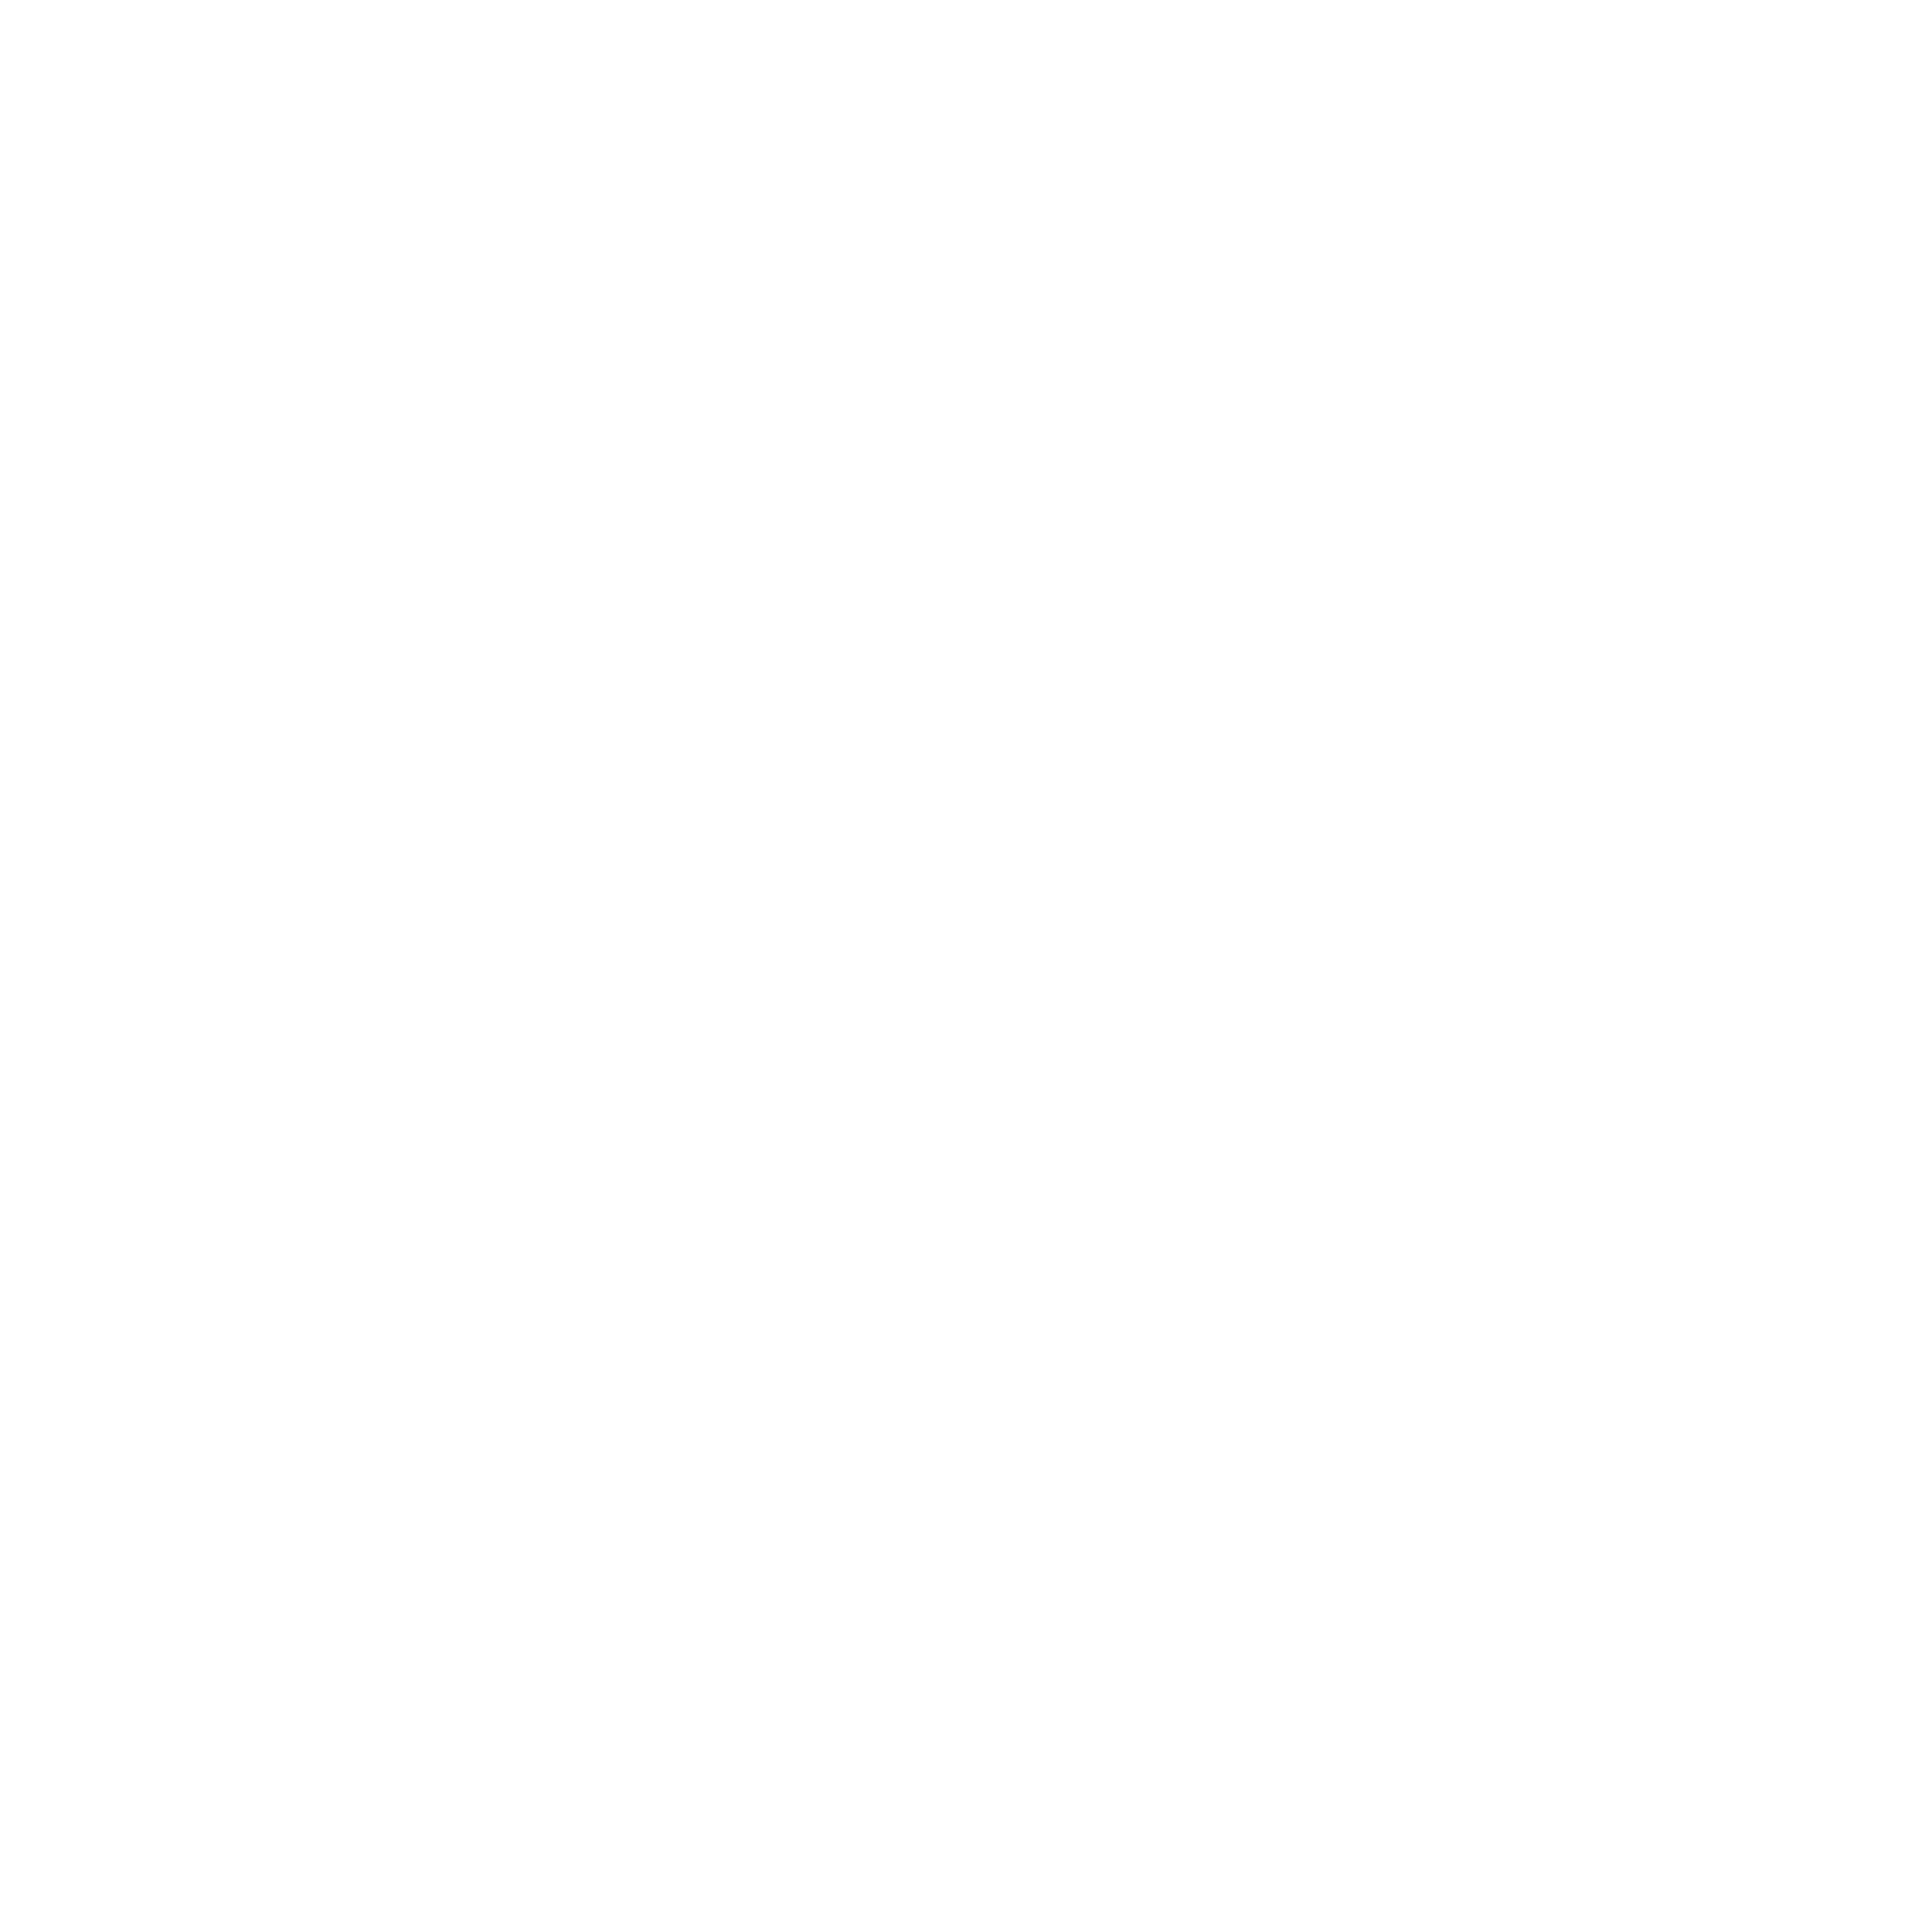 GFI